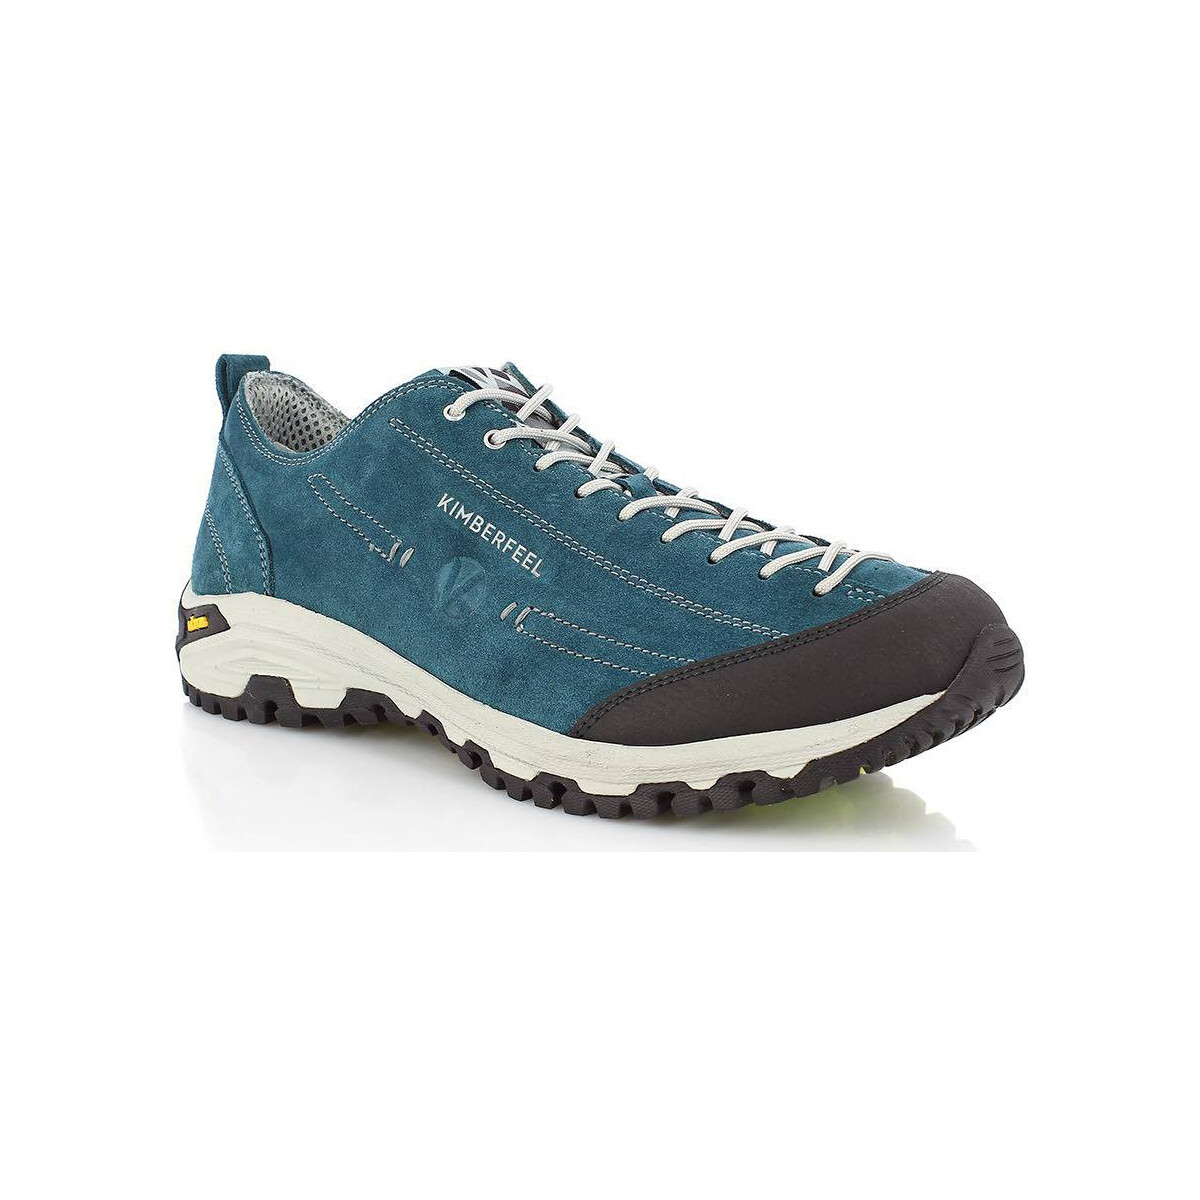 Sapatos Homem Sapatos de caminhada Kimberfeel CHOGORI Azul